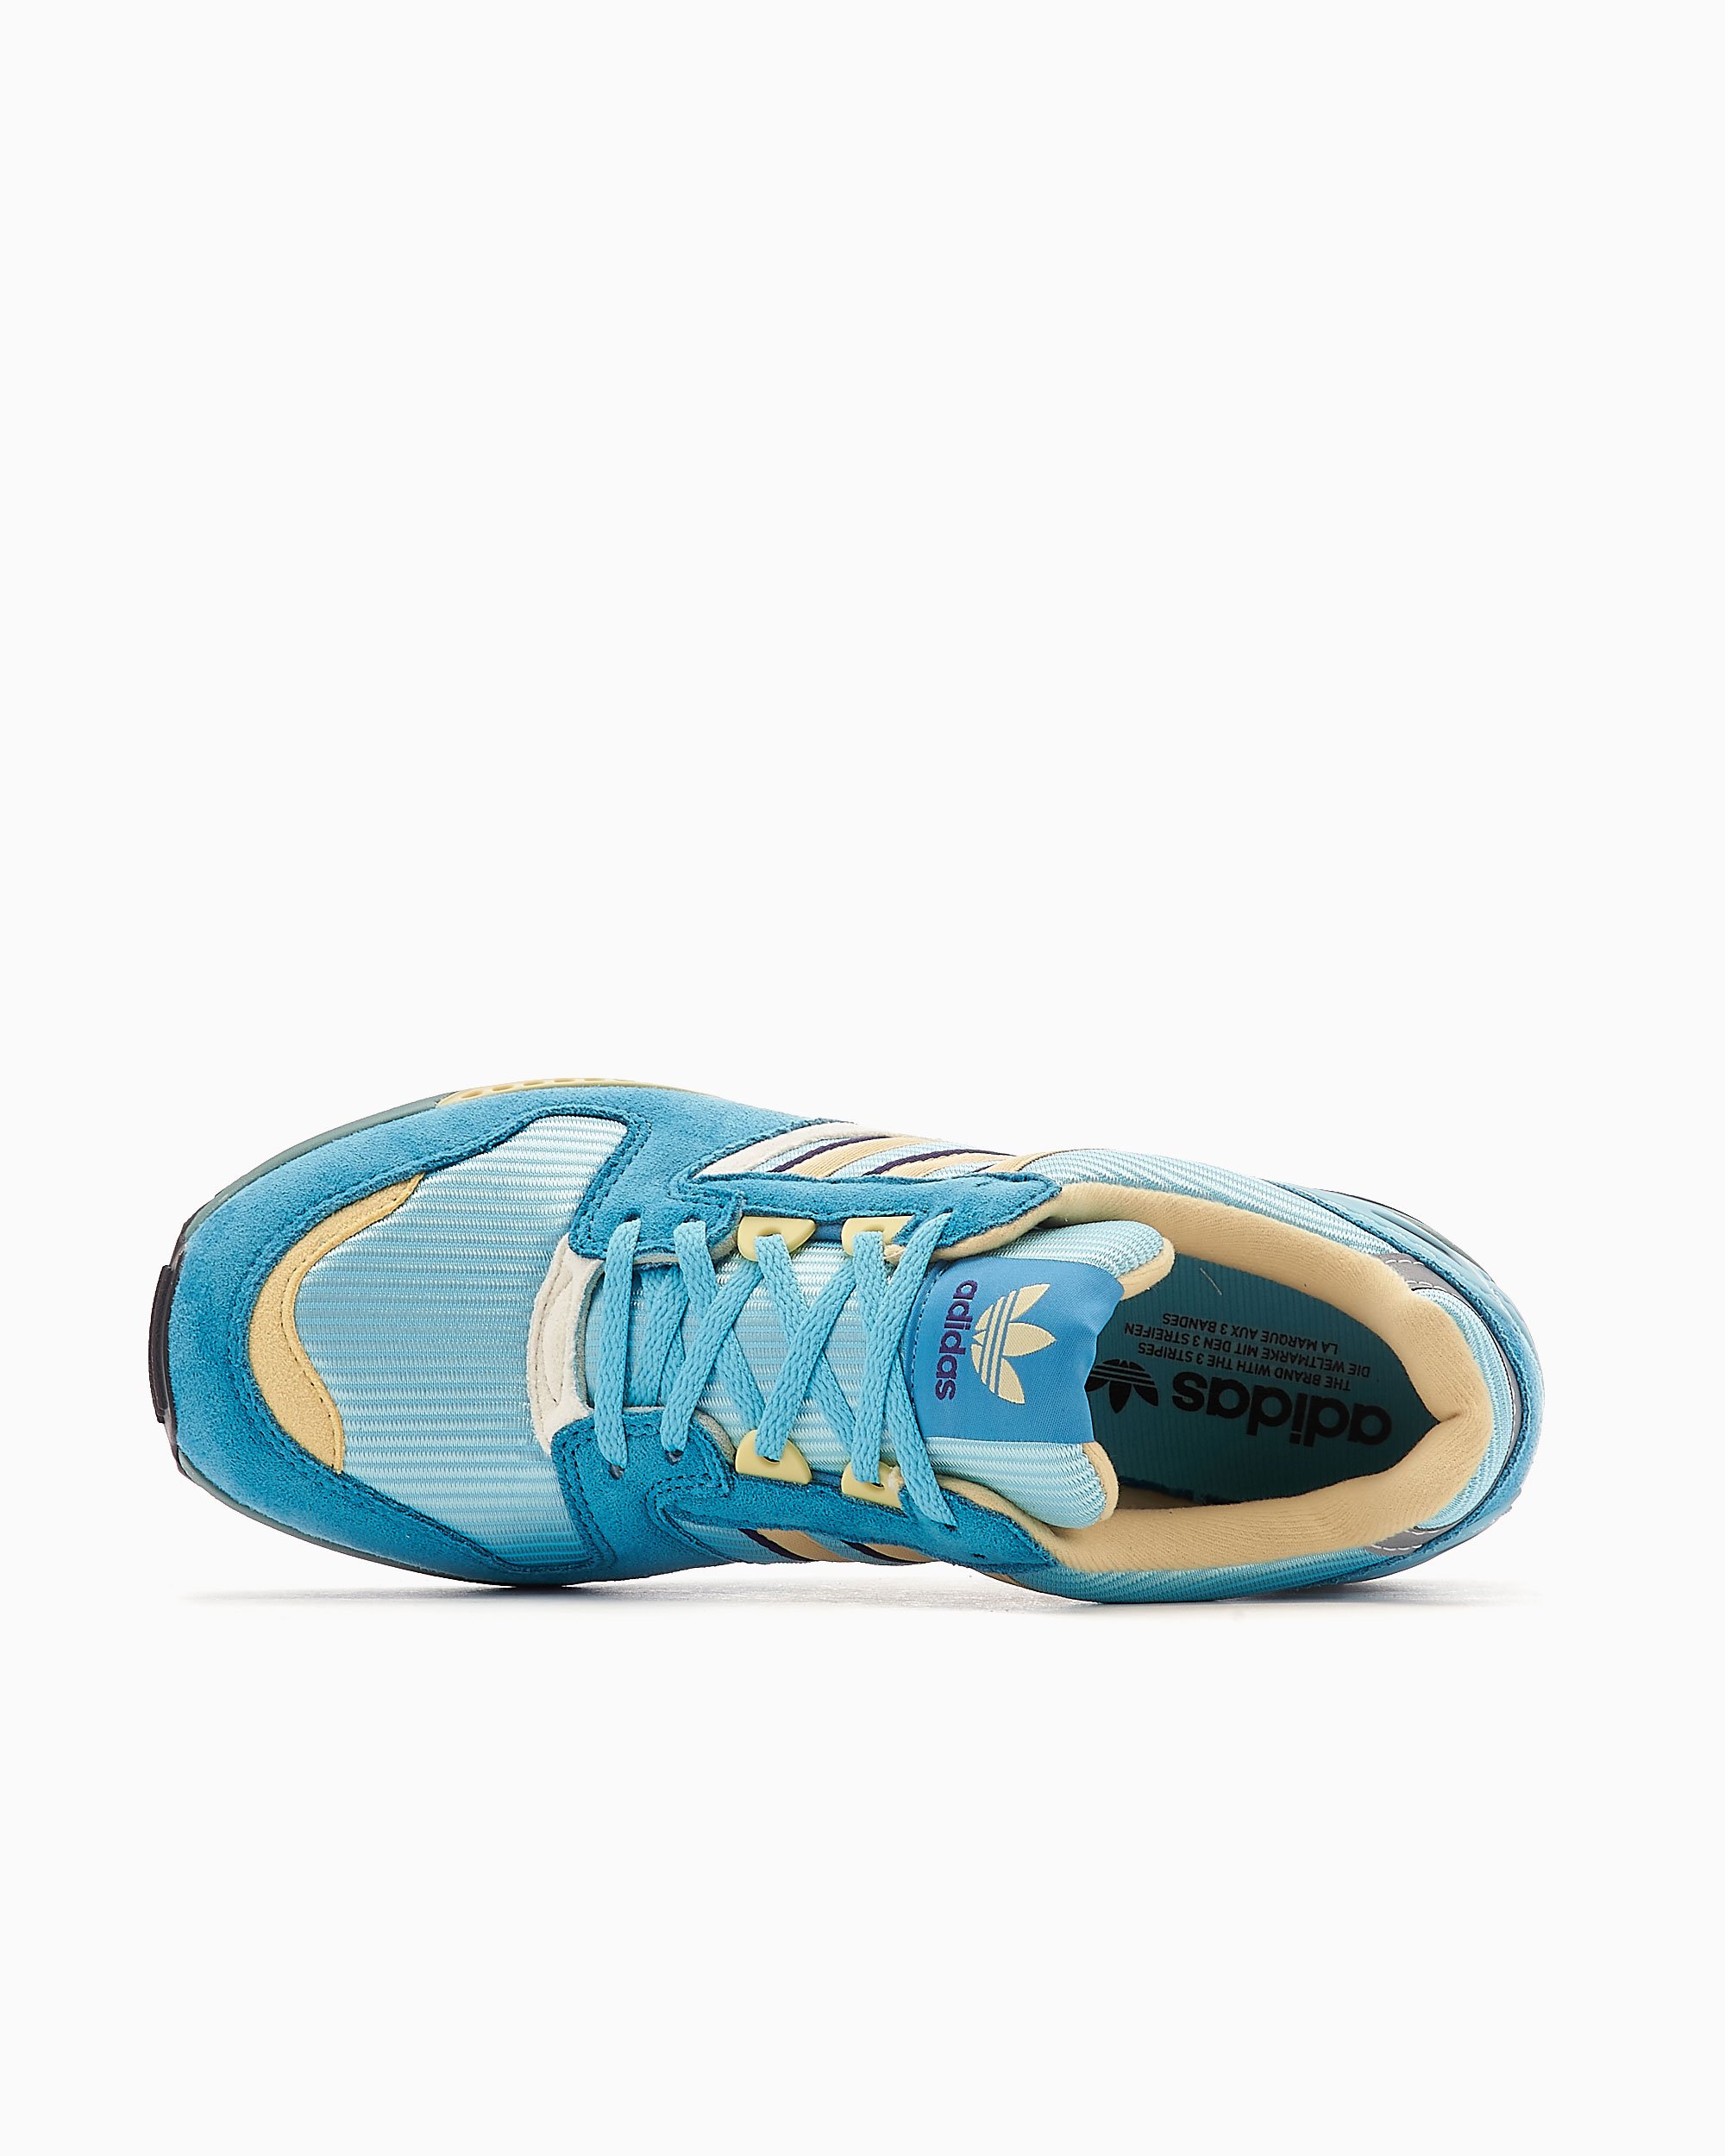 adidas ZX 8020 Blue GX1617| FOOTDISTRICT